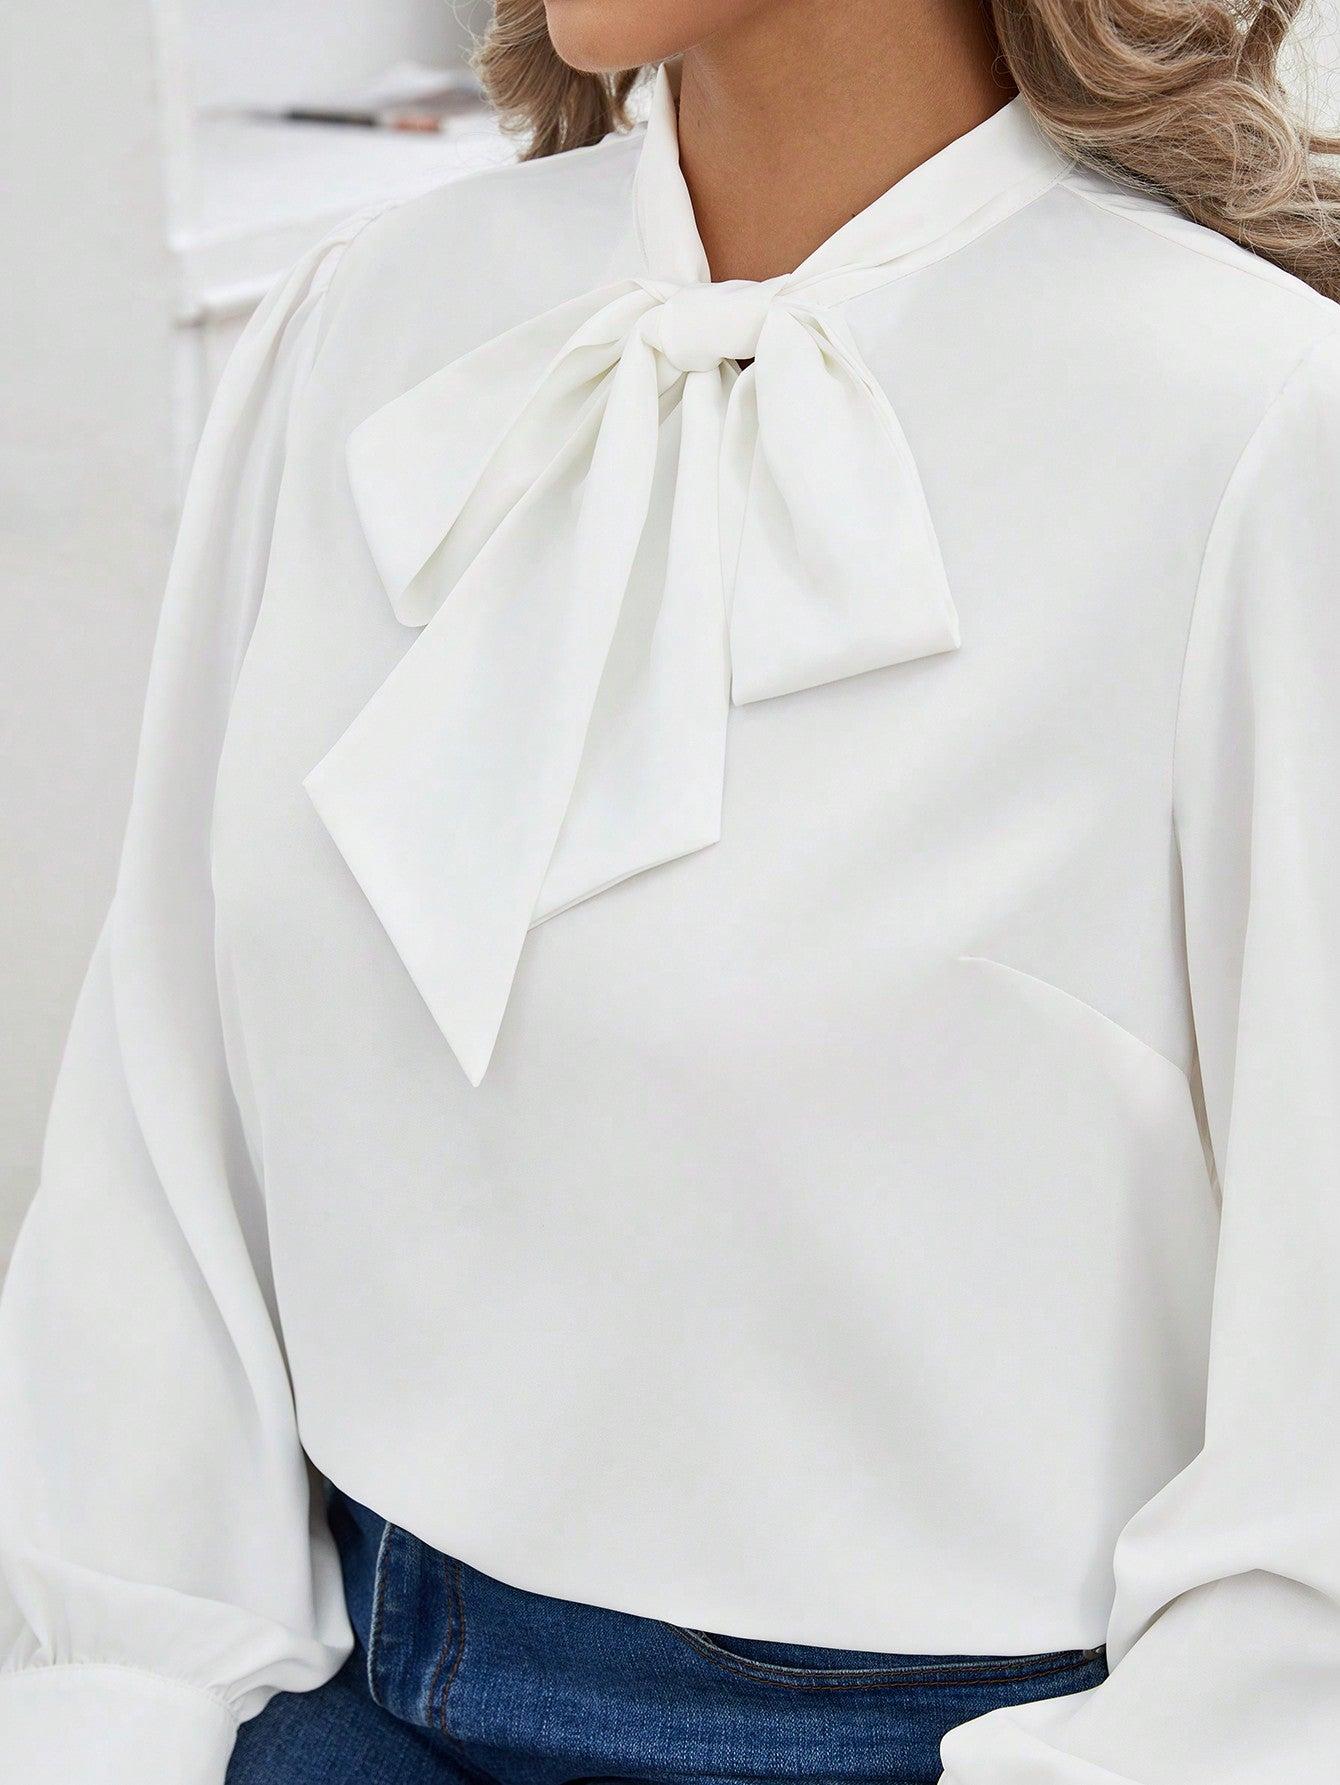 biała bluzka długi rękaw wiązanie kokarda